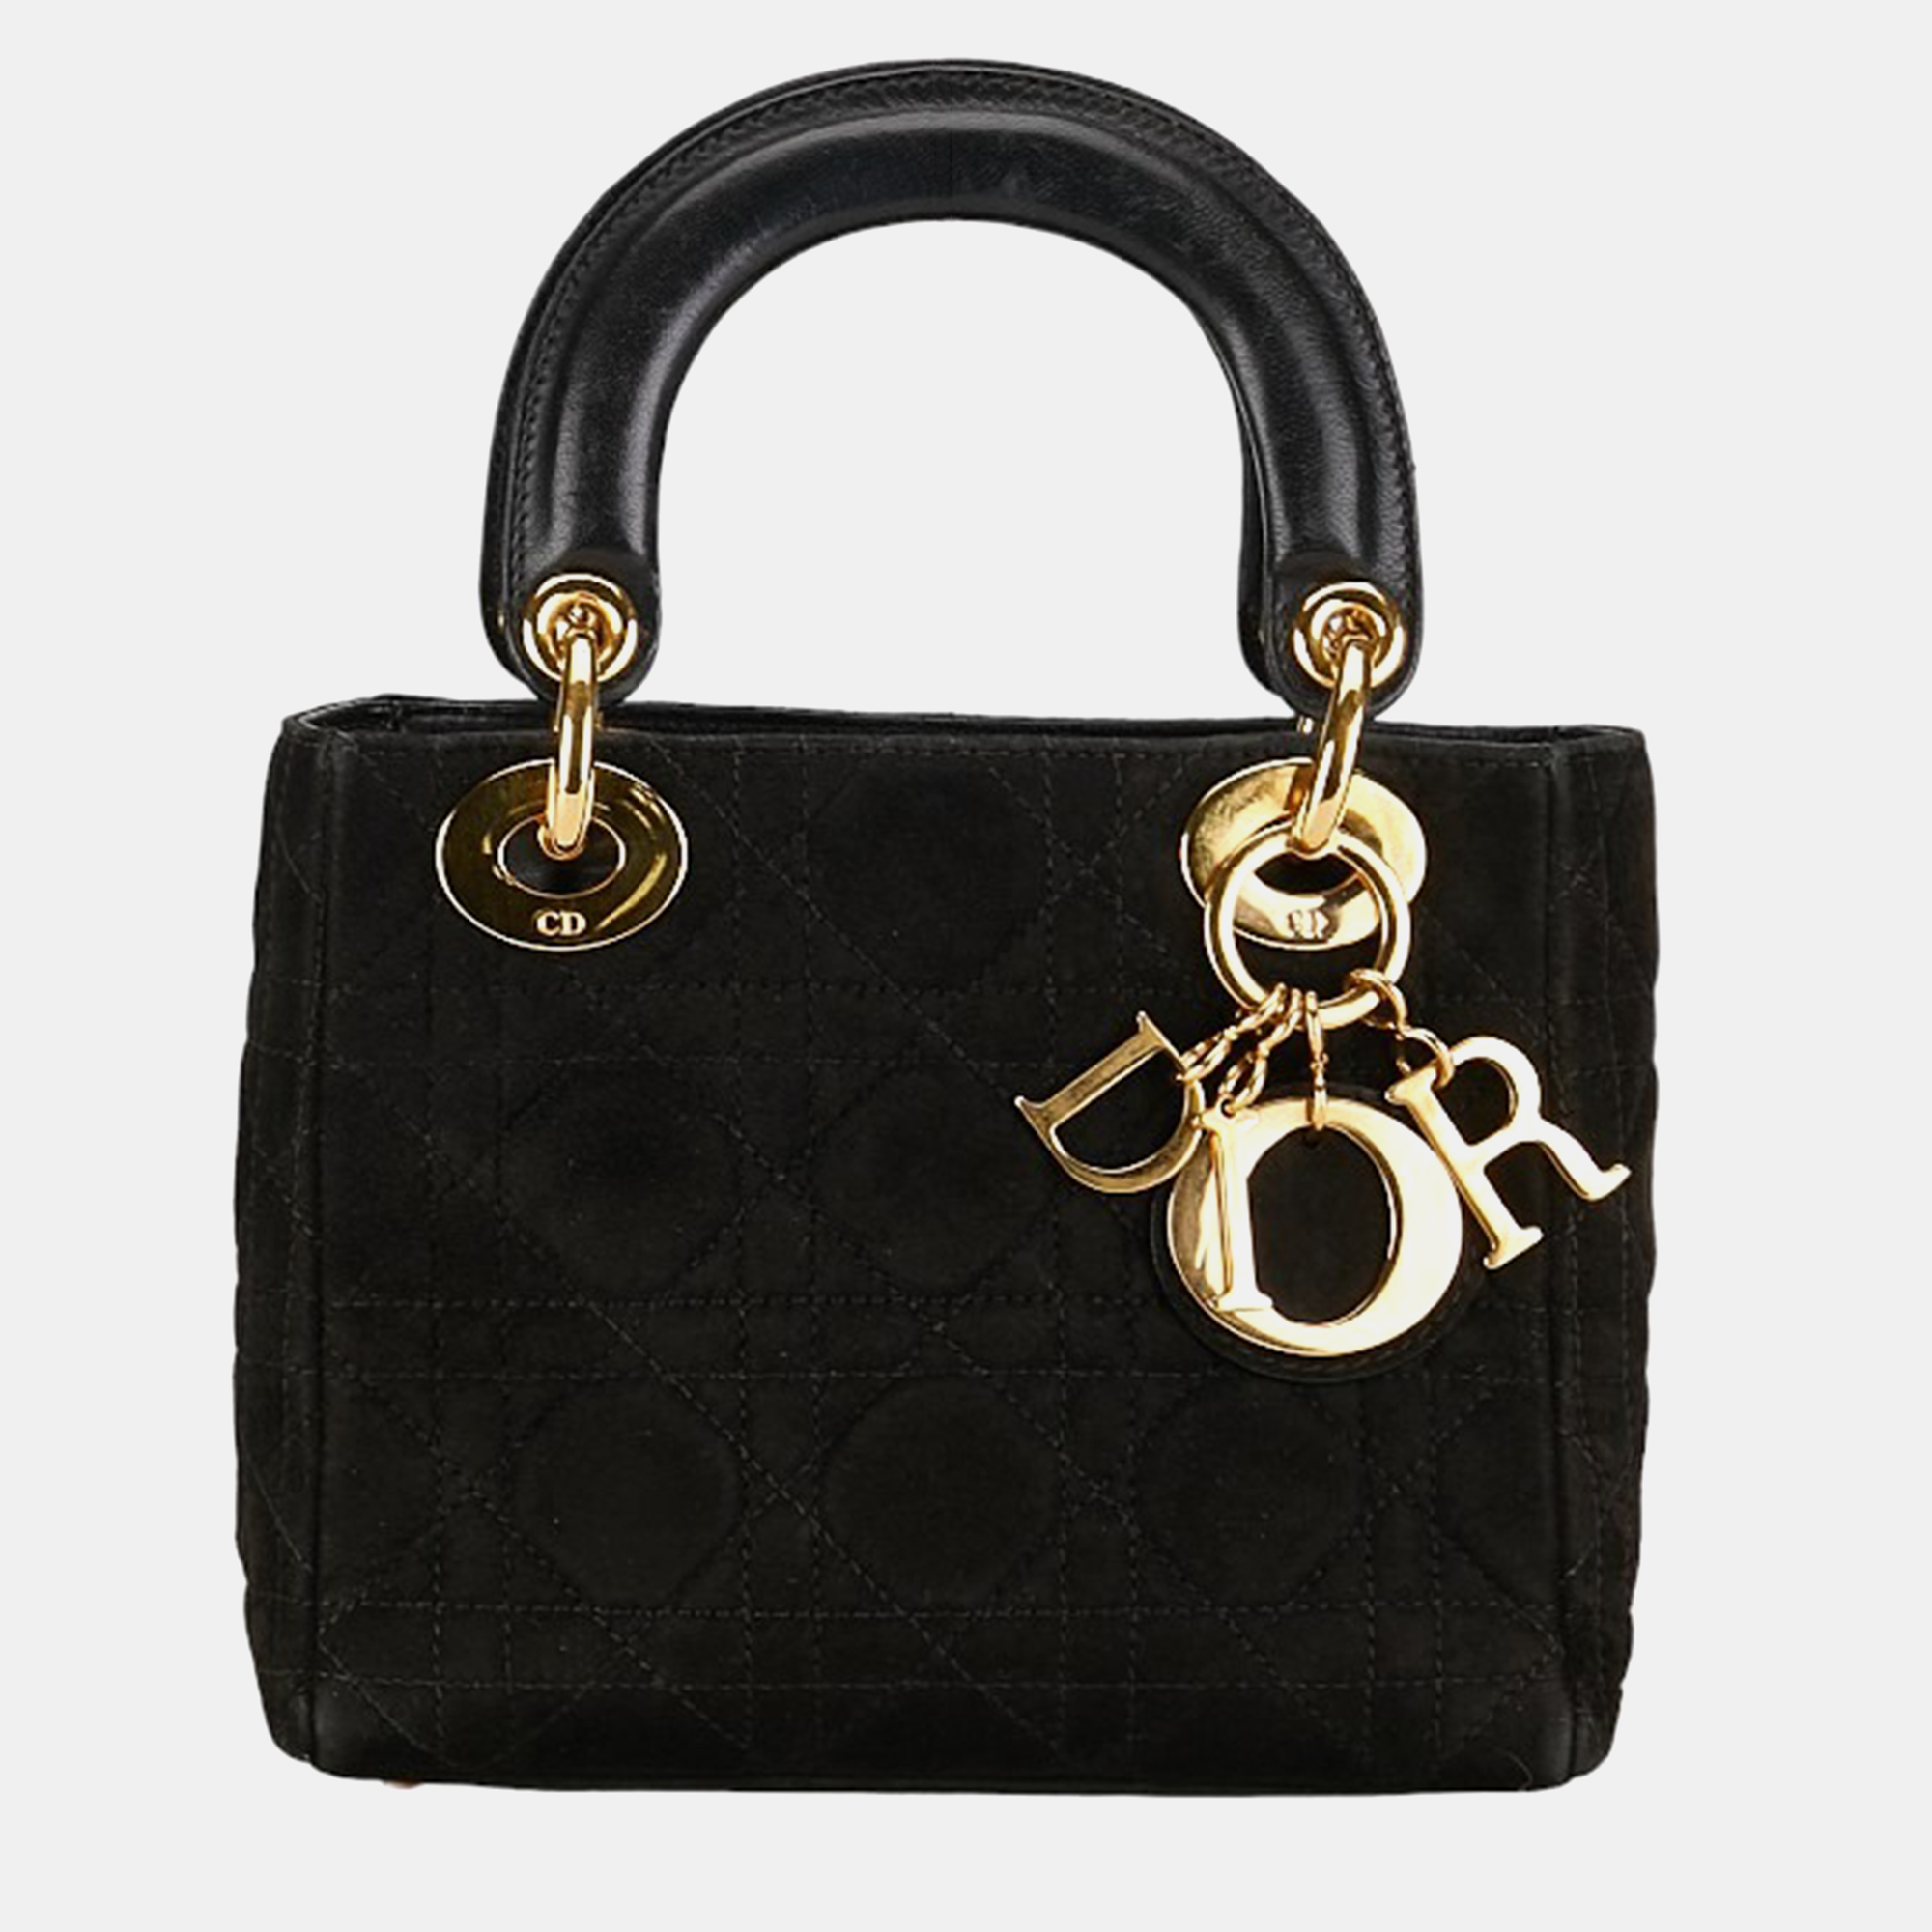 Dior black cannage suede lady dior mini bag